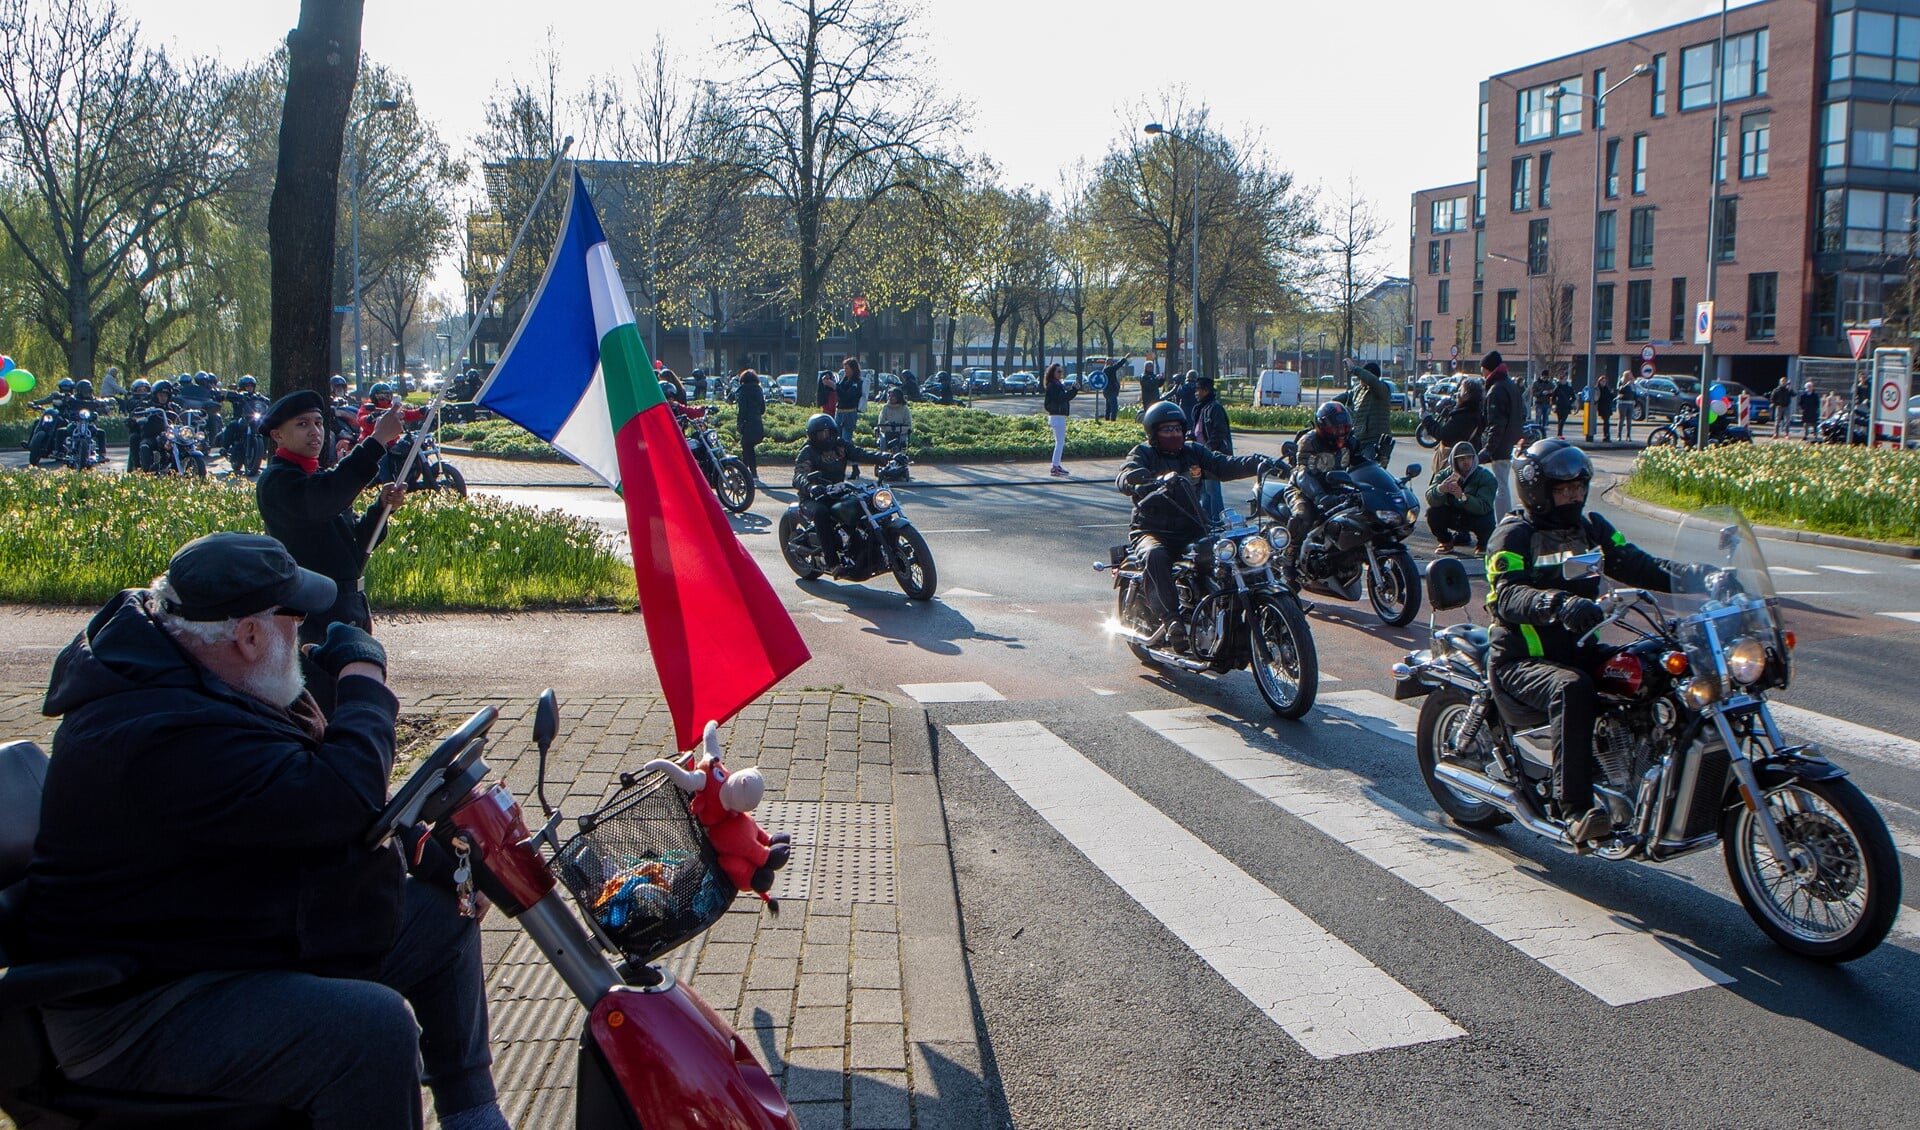 De motorrit startte 13 april in Huizen.